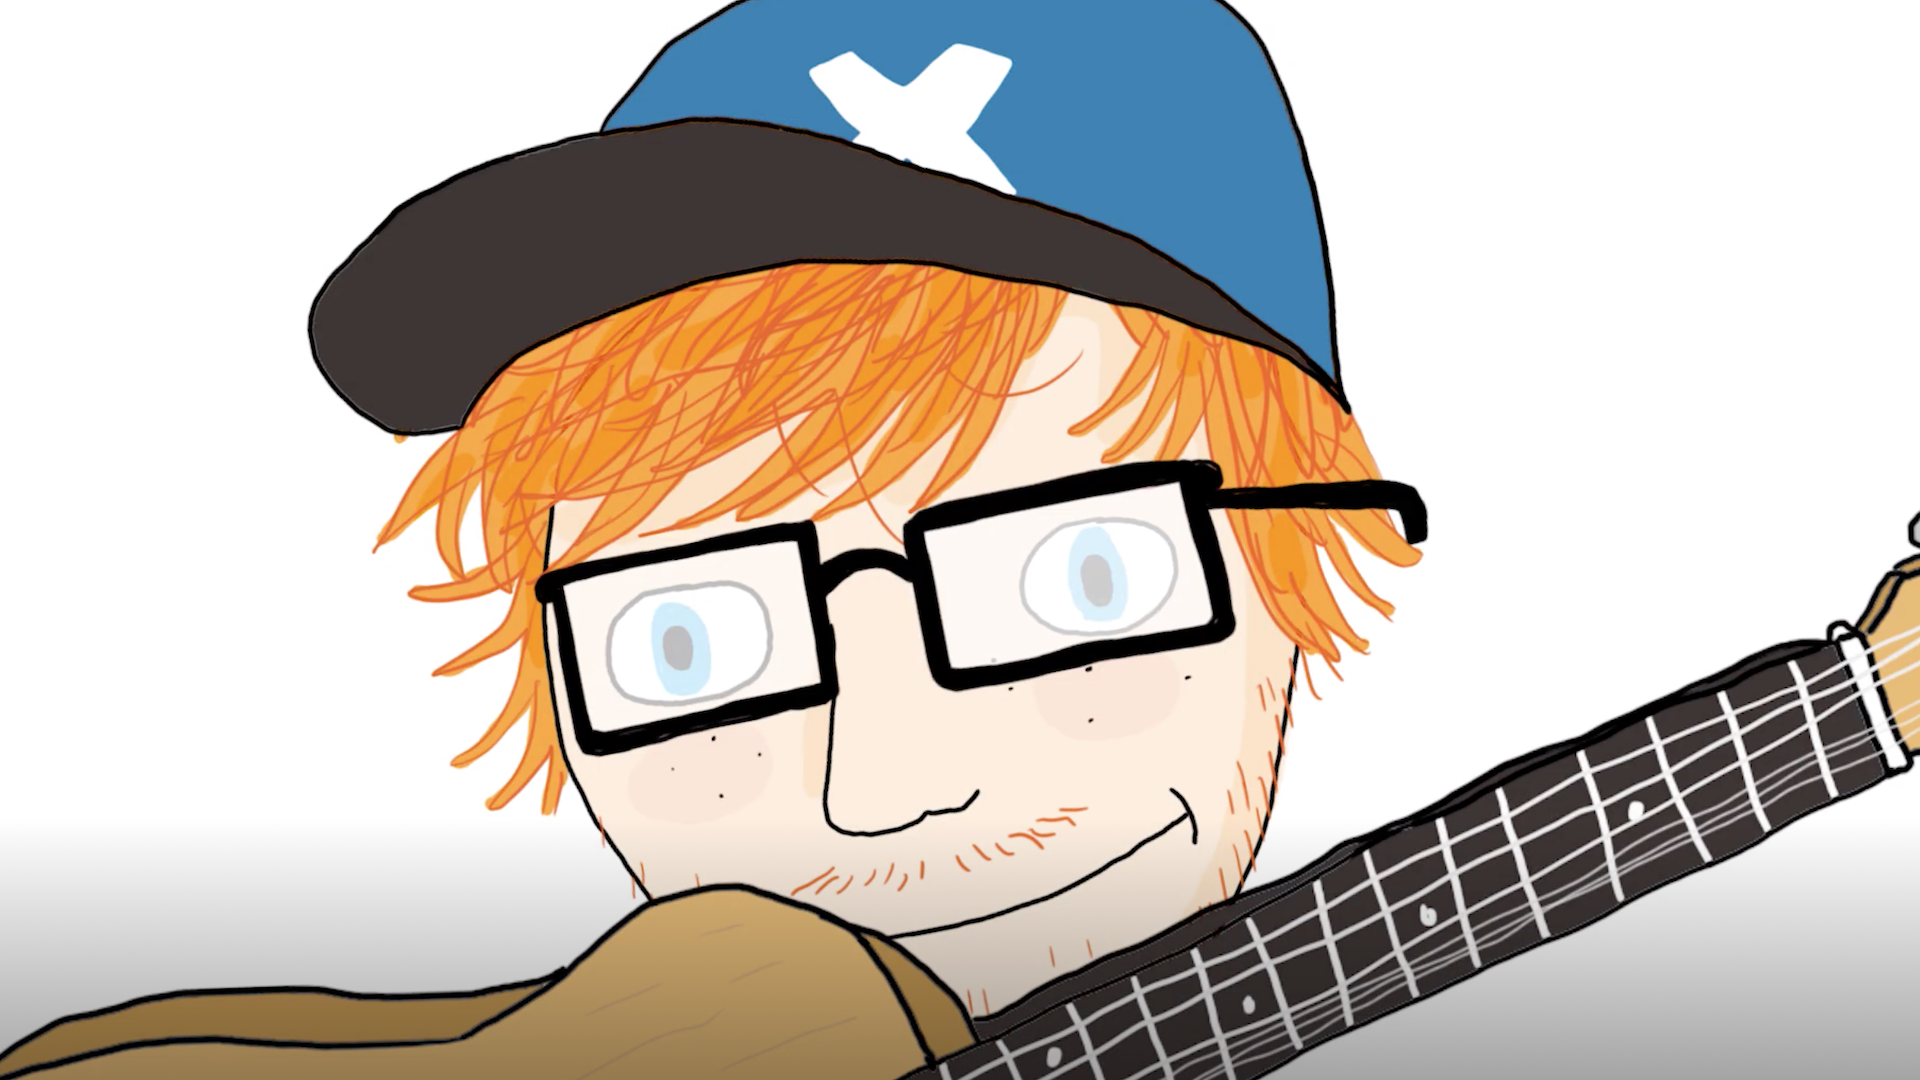 A cartoon of Ed Sheeran's face